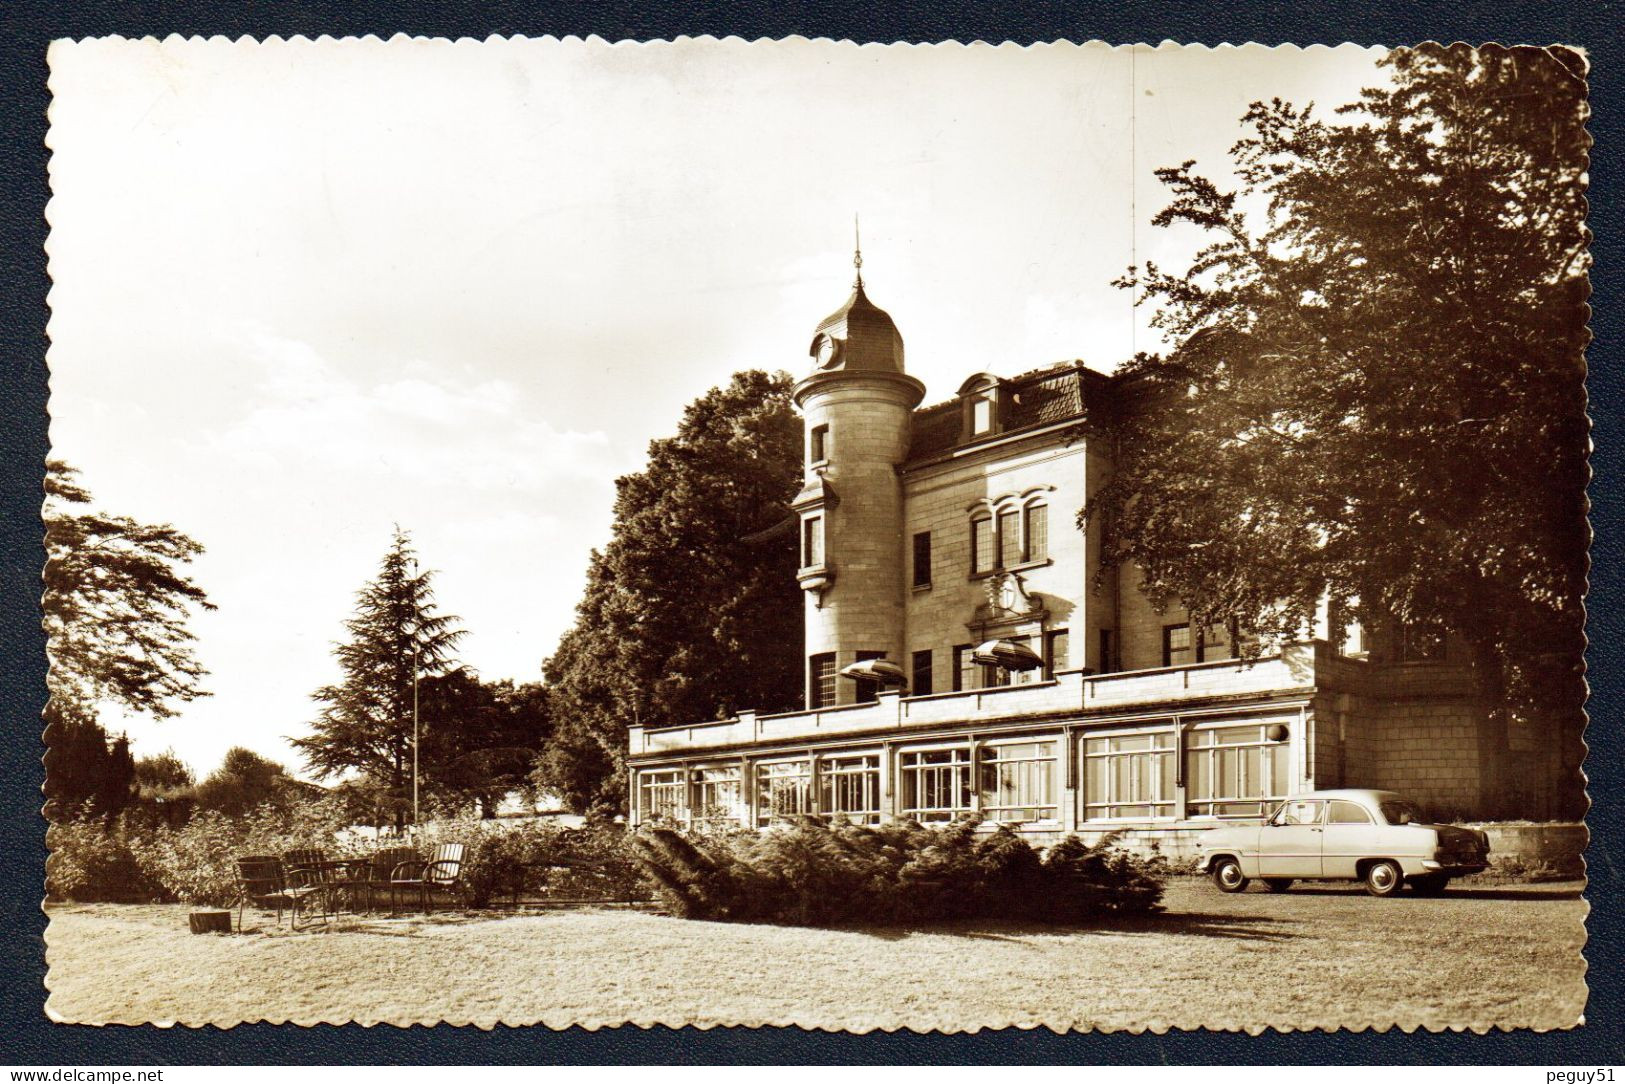 Houthem-Valkenburg. Vacantieoord De Kluis. Station De Vacances, Château De Kluis. (1901- Au Bord De La Route A79). 1961 - Valkenburg